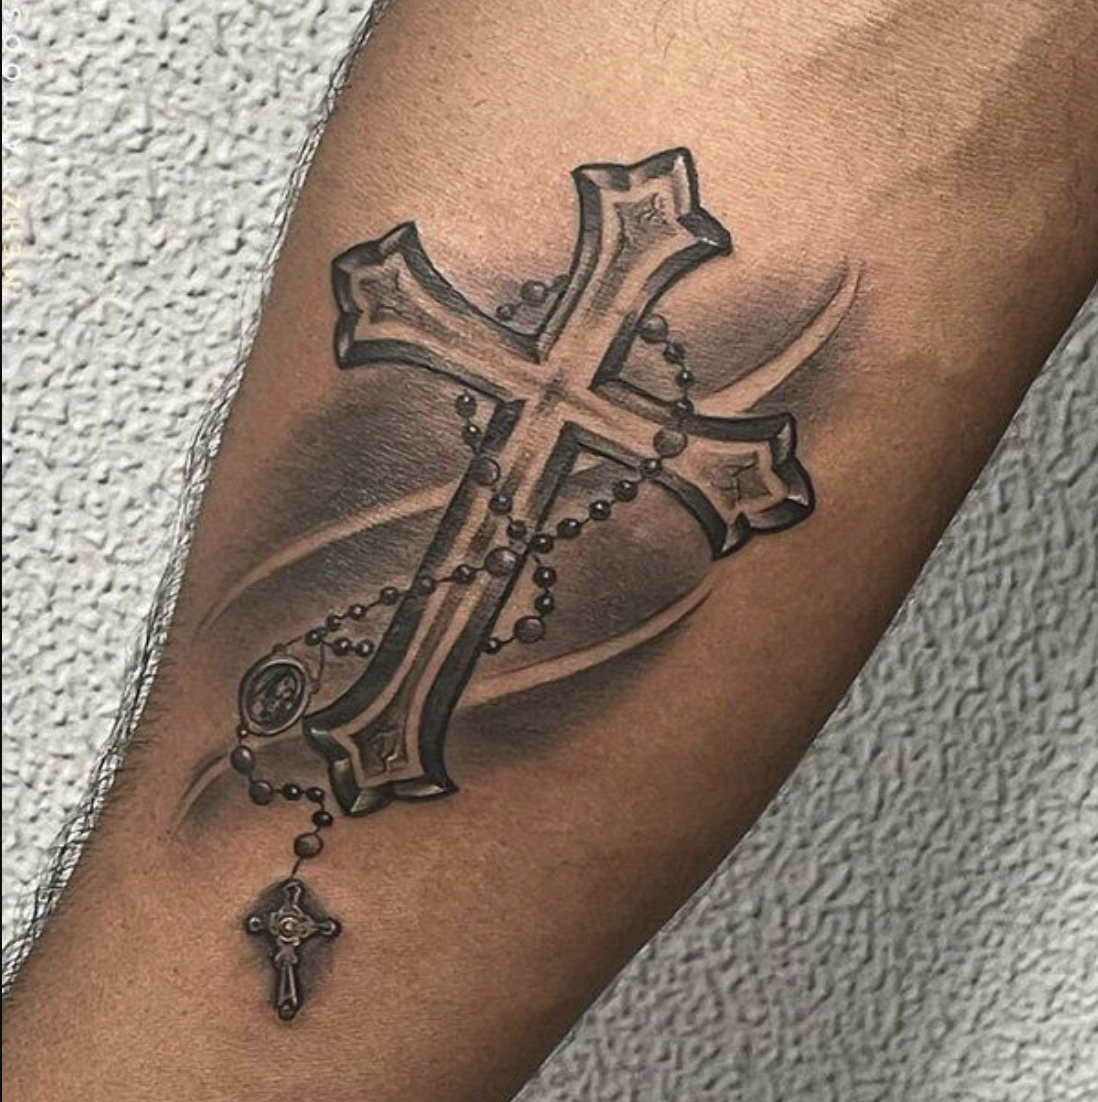 kaykay___kk - Word tattoo #word #wordtattoo... | Facebook